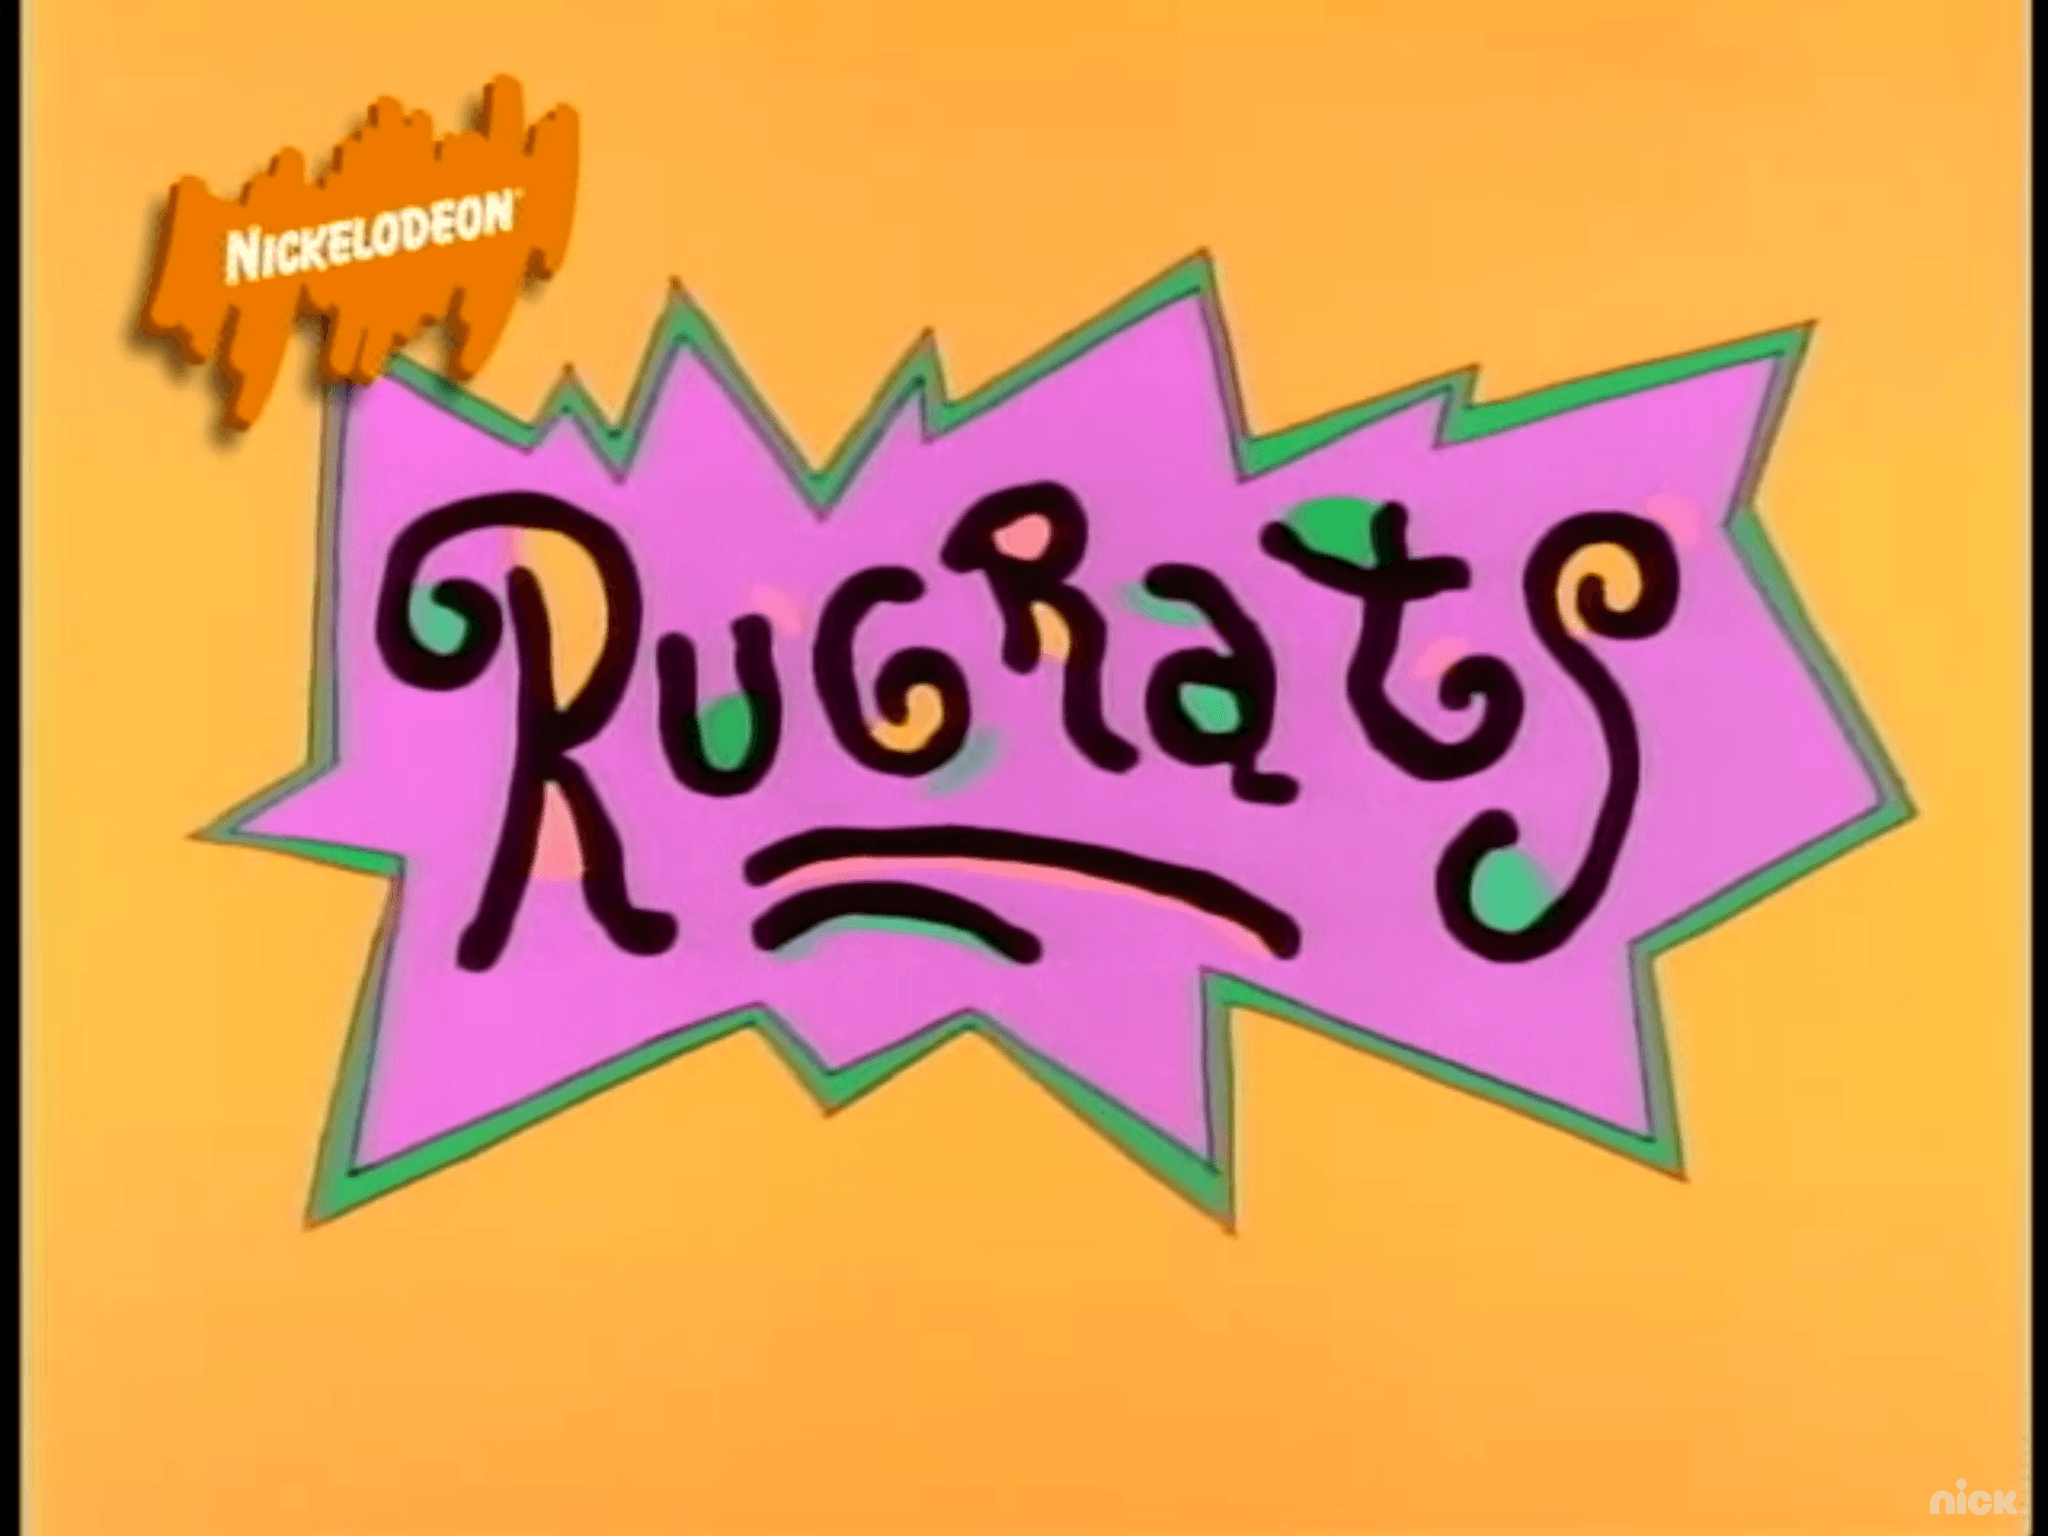 Colors Live Rugrats Logo By Hamlad - vrogue.co